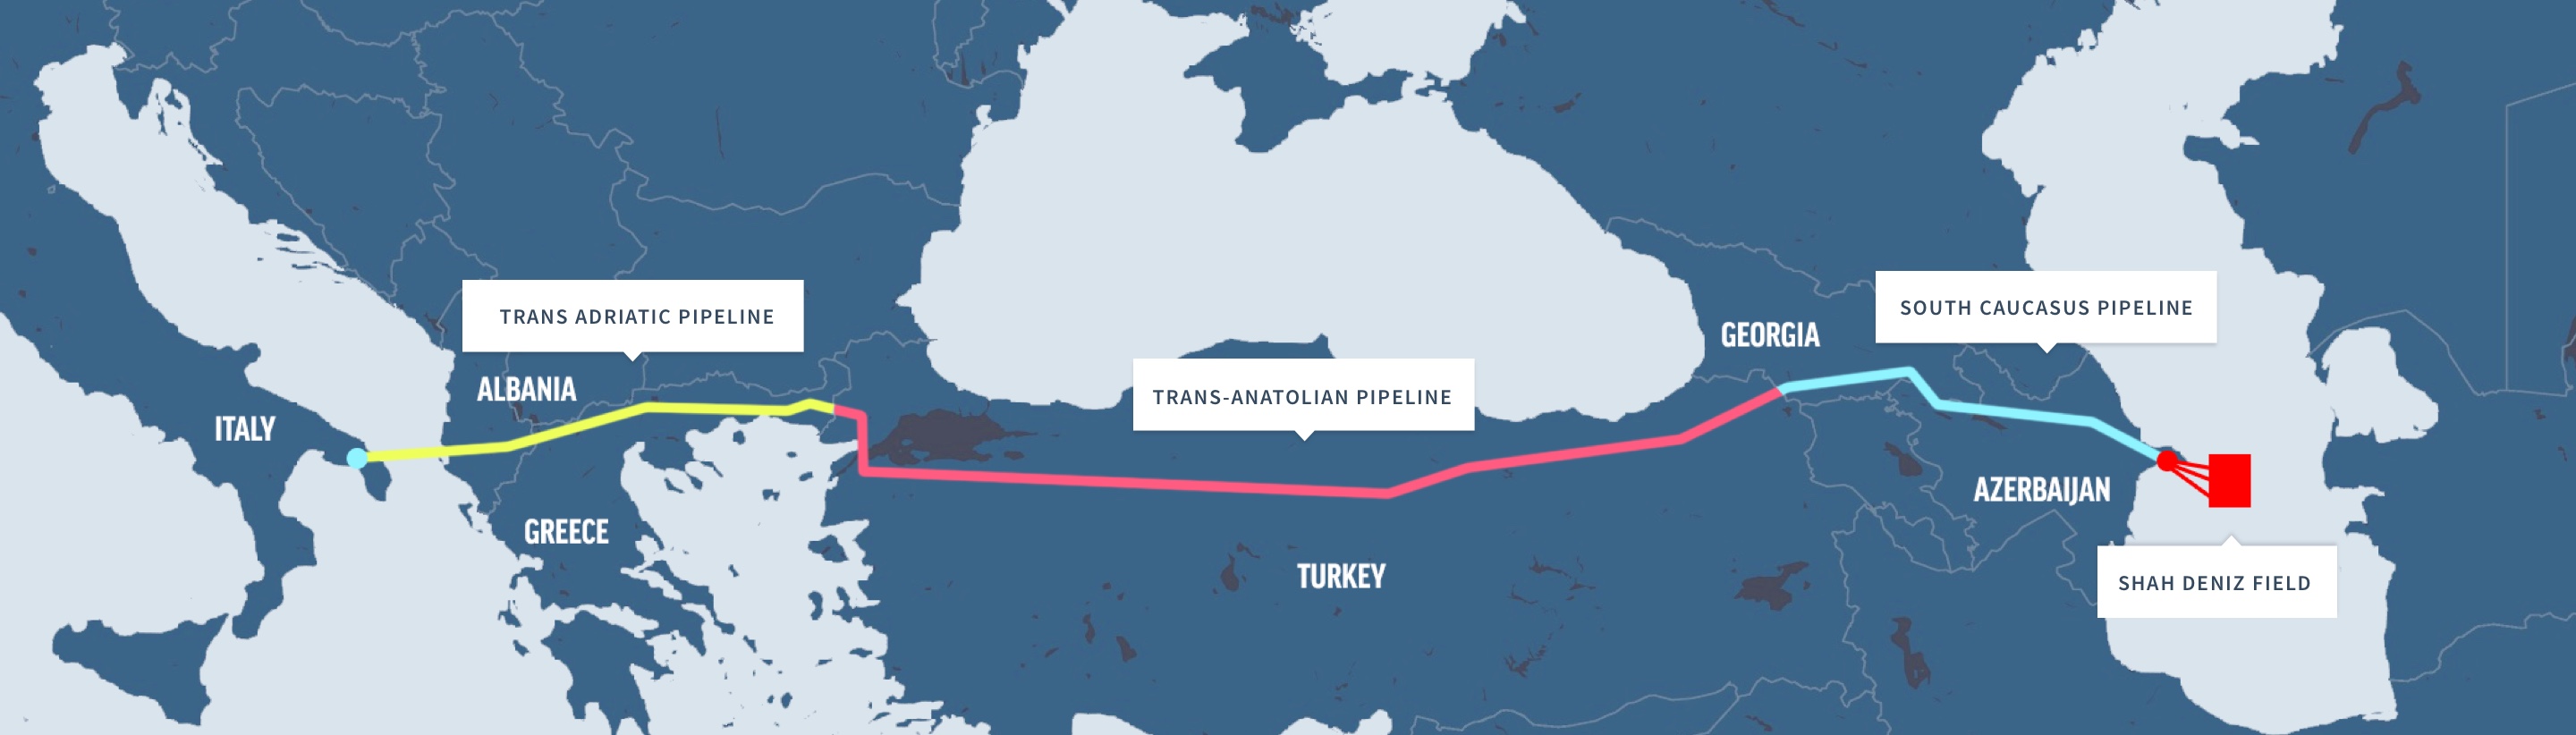 Будущее каспийских нефтегазовых проектов Азербайджана и Казахстана | Вестник Кавказа